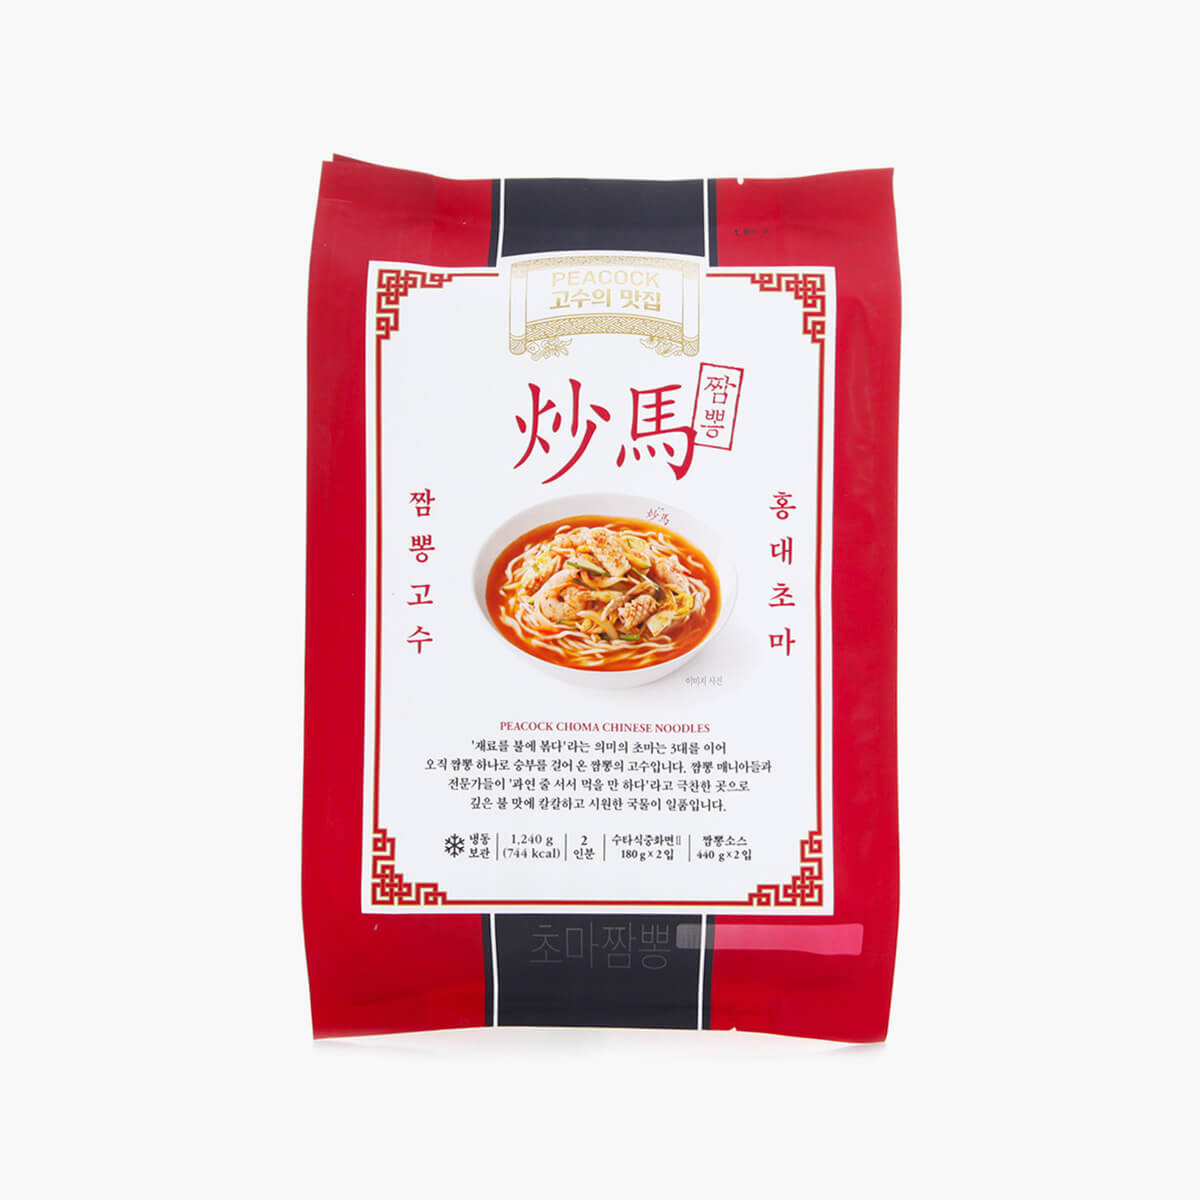 韓國食品-[Peacock] Choma Chinese noodles 1240g